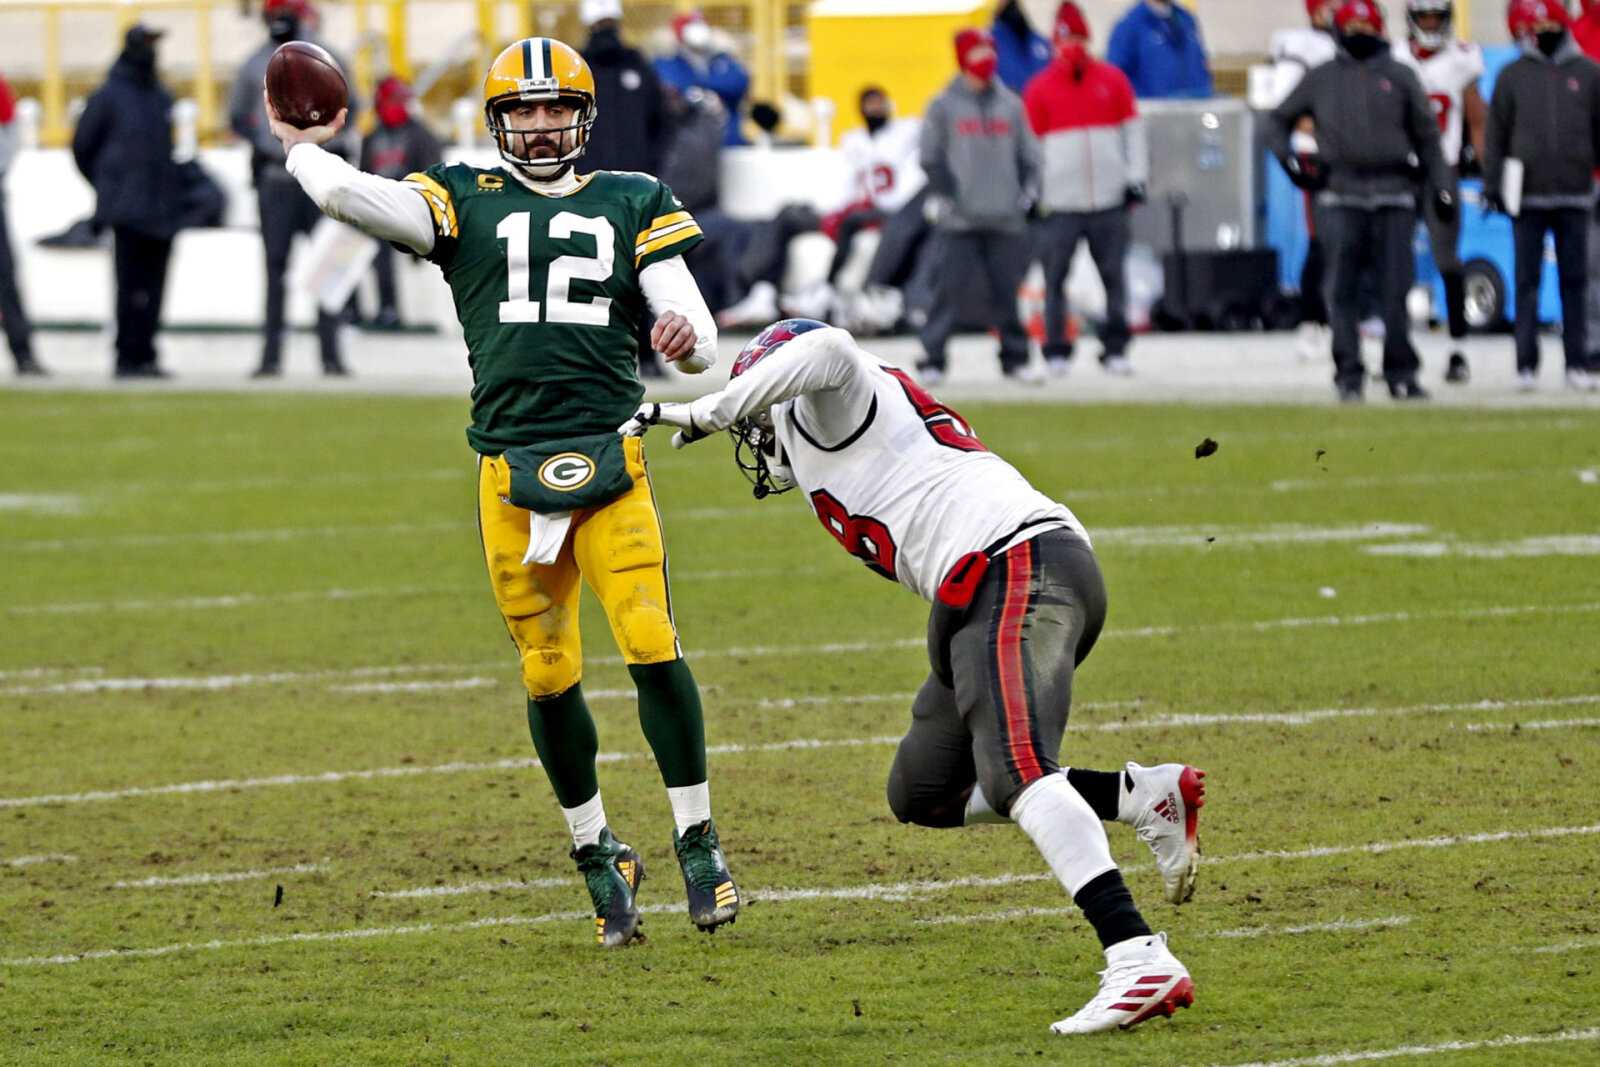 Un analyste de la NFL suggère que les Packers de Green Bay ne sont pas pleinement engagés à garder Aaron Rodgers